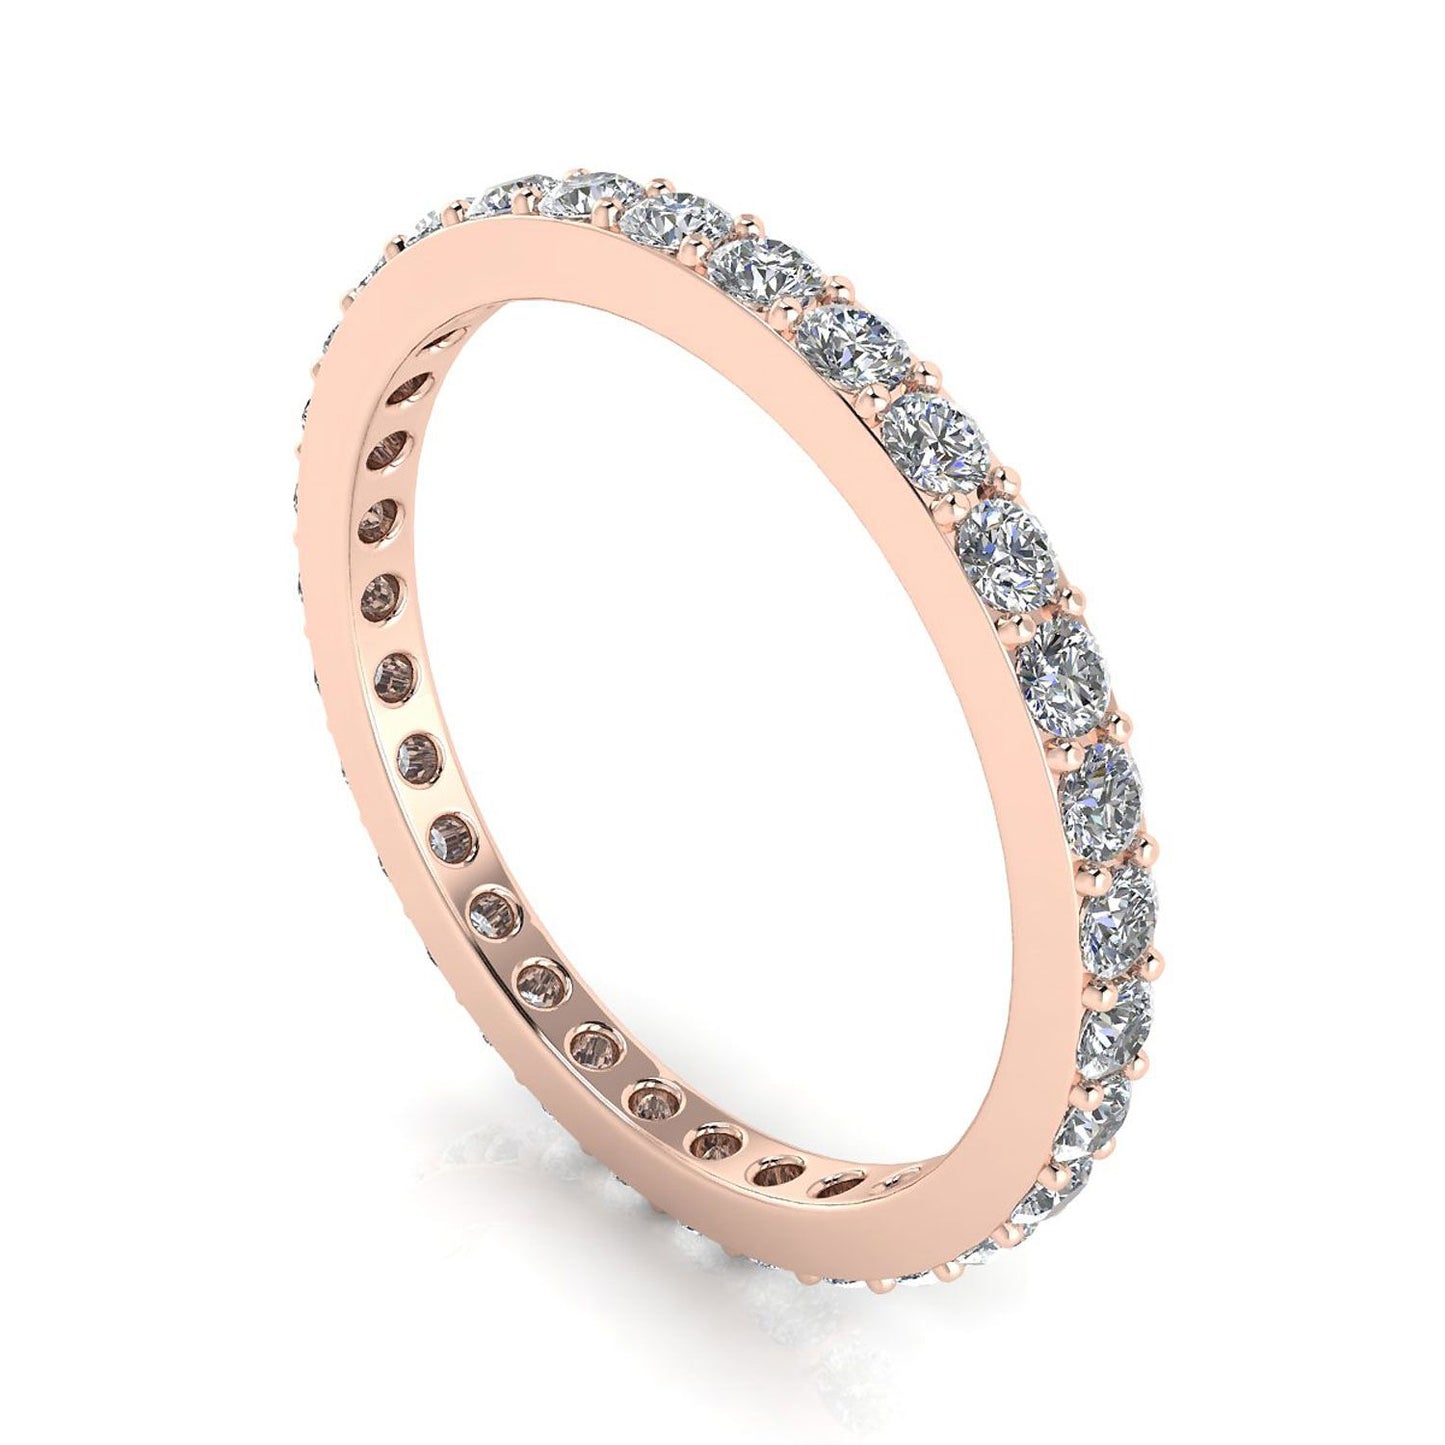 แหวนไพลินเจียระไนเพชรกลมตั้ง Eternity Ring กุหลาบทอง 14k (1.43 กะรัต Tw.) ขนาดแหวน 6